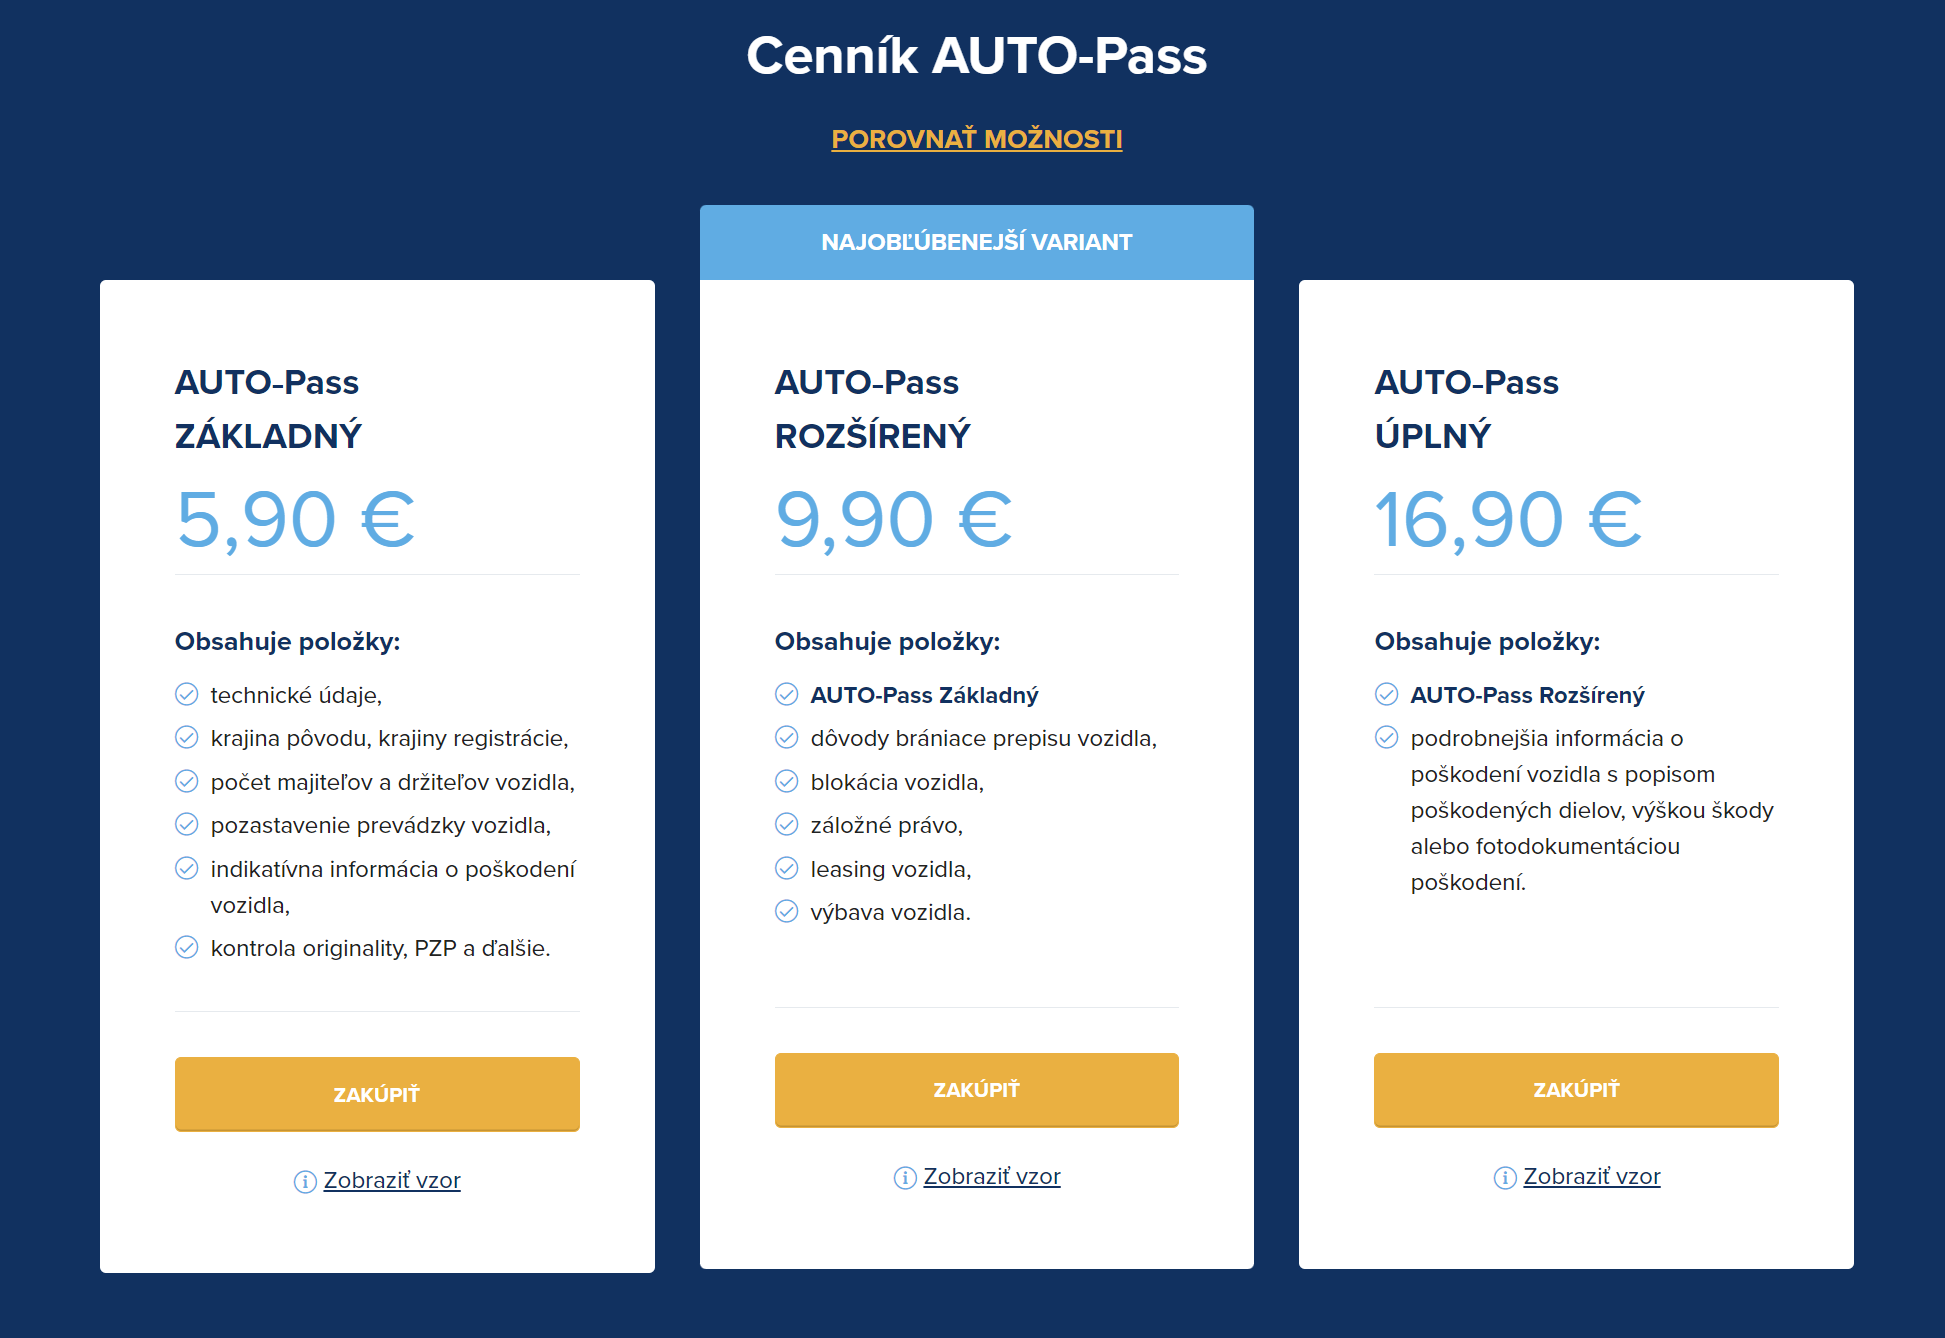 Komplexné overenie prostredníctvom AUTO-Passu získate už od 5,90€